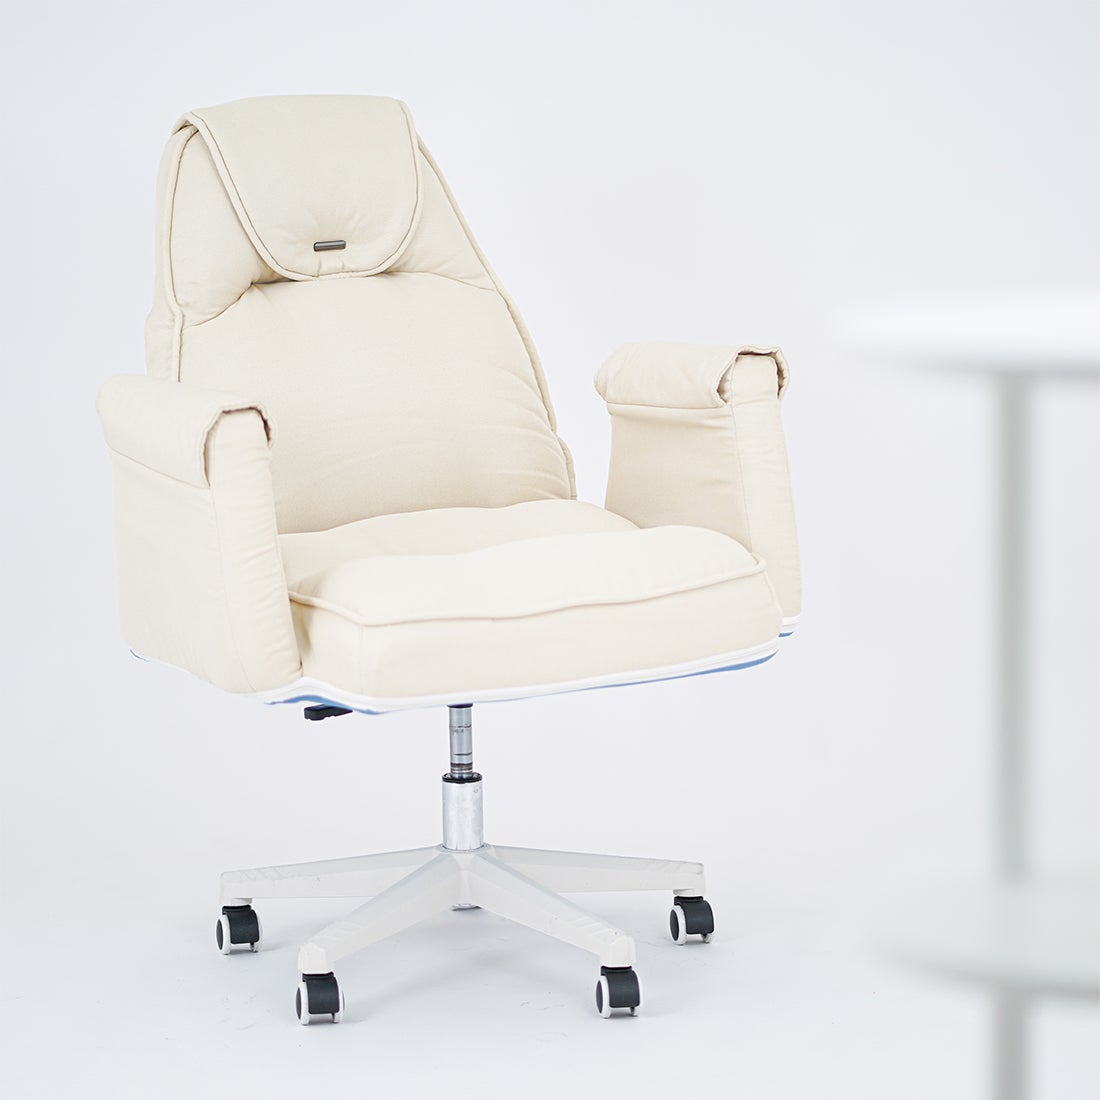 เก้าอี้ทำงาน รุ่น KC-PLAY OTAWA เบาะผ้าสีขาว